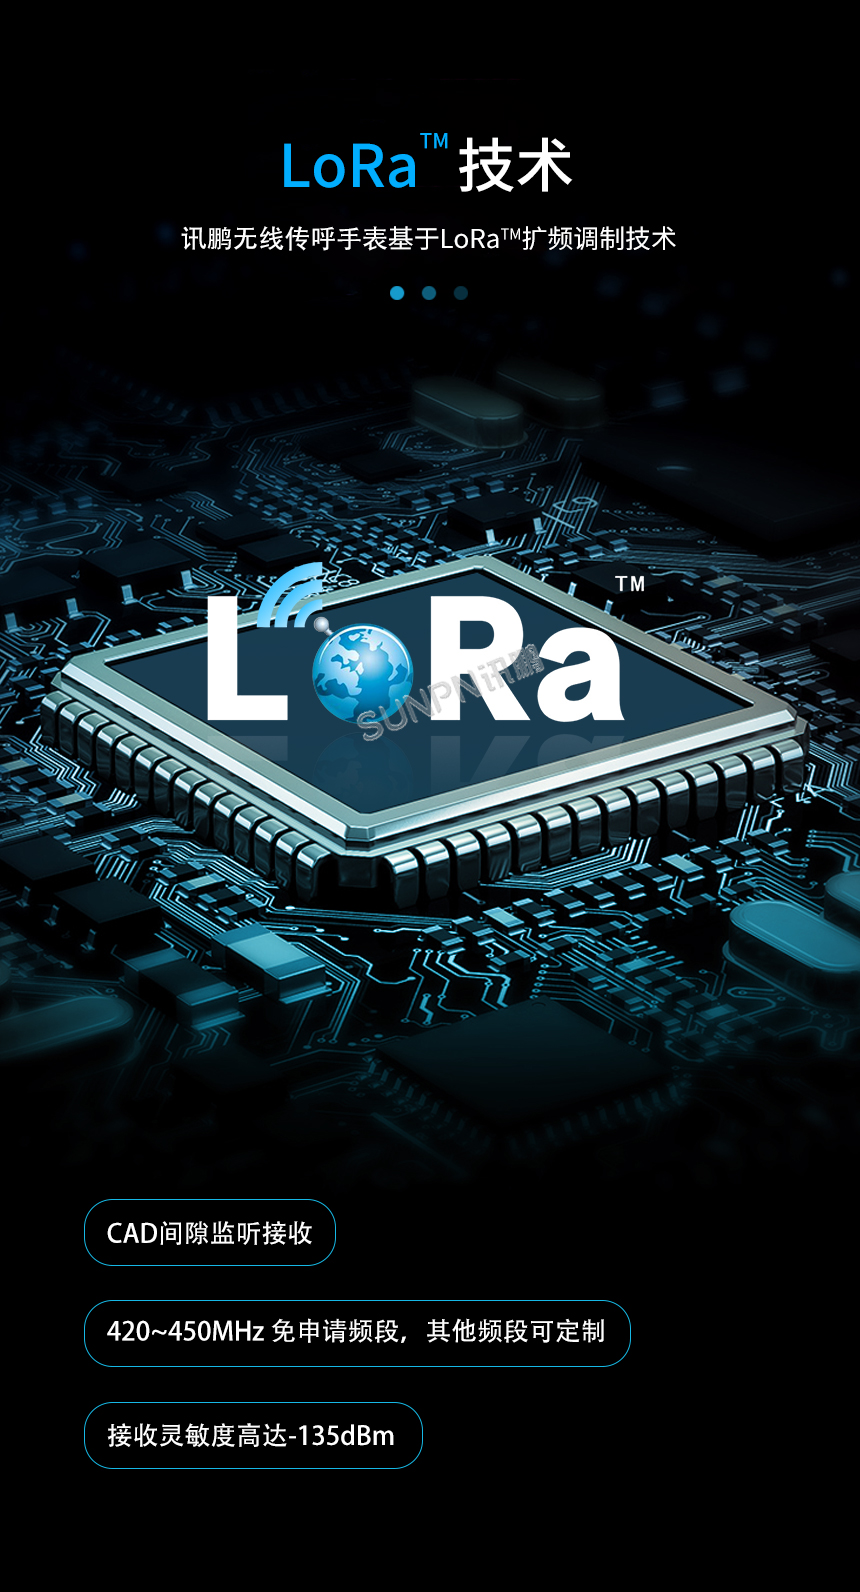 lora工业智能腕表-lora技术展示